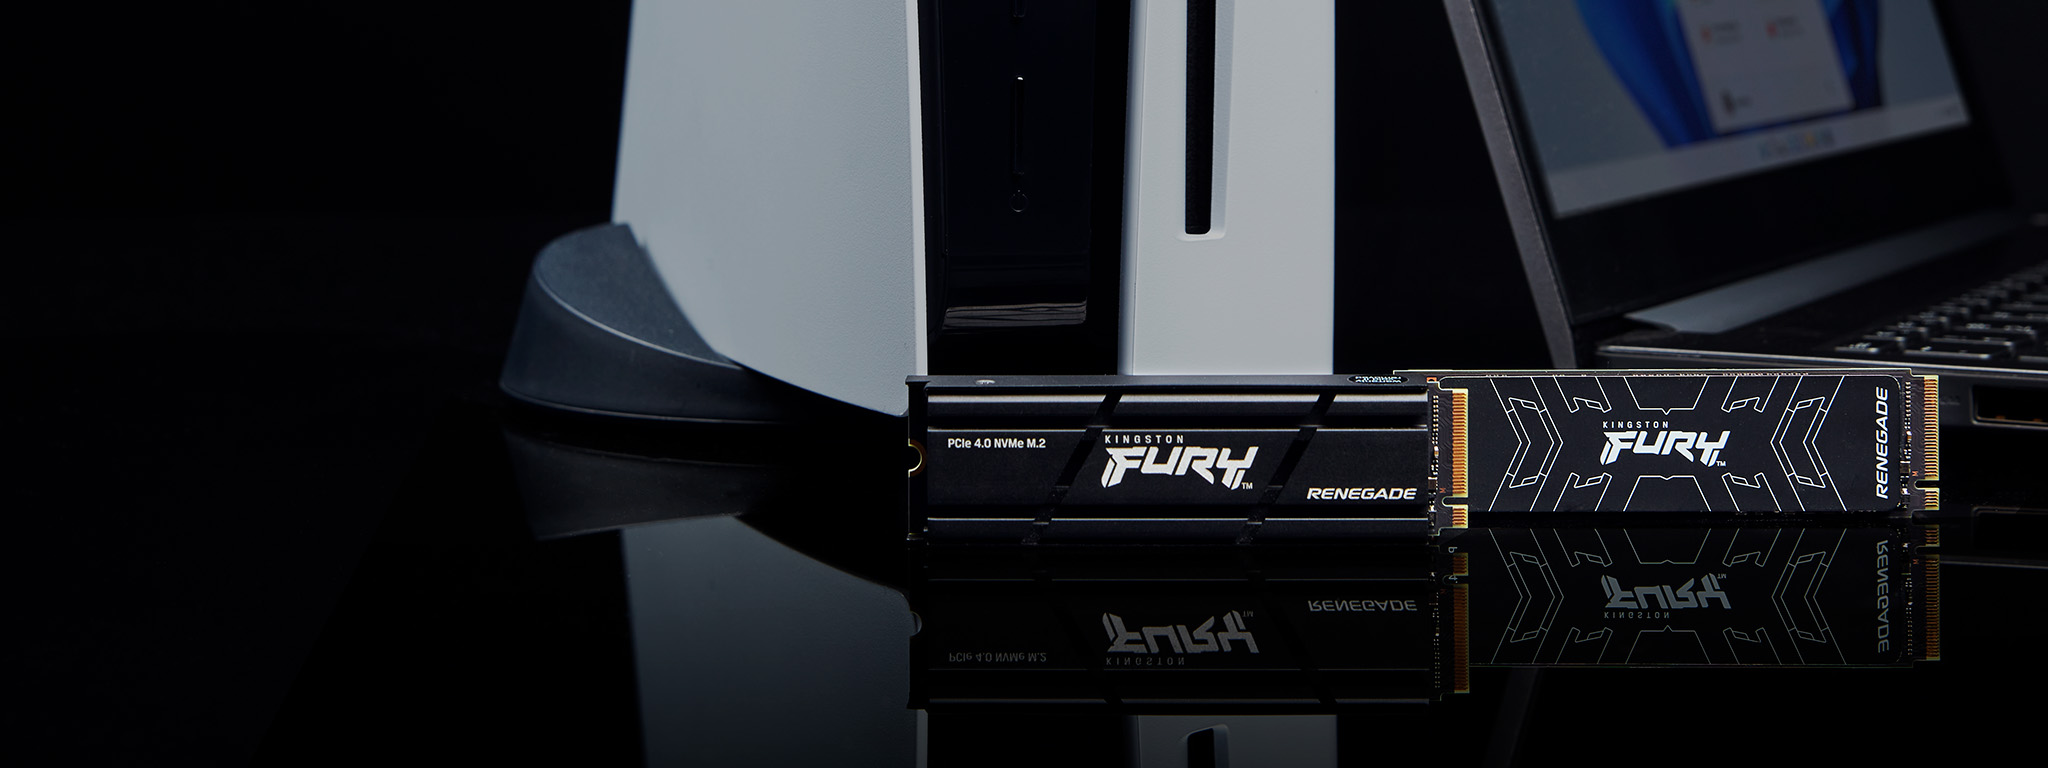 Zwei Kingston FURY Renegade SSDs, mit und ohne Heatsink, stehen neben einer PS5 und einem Laptop.